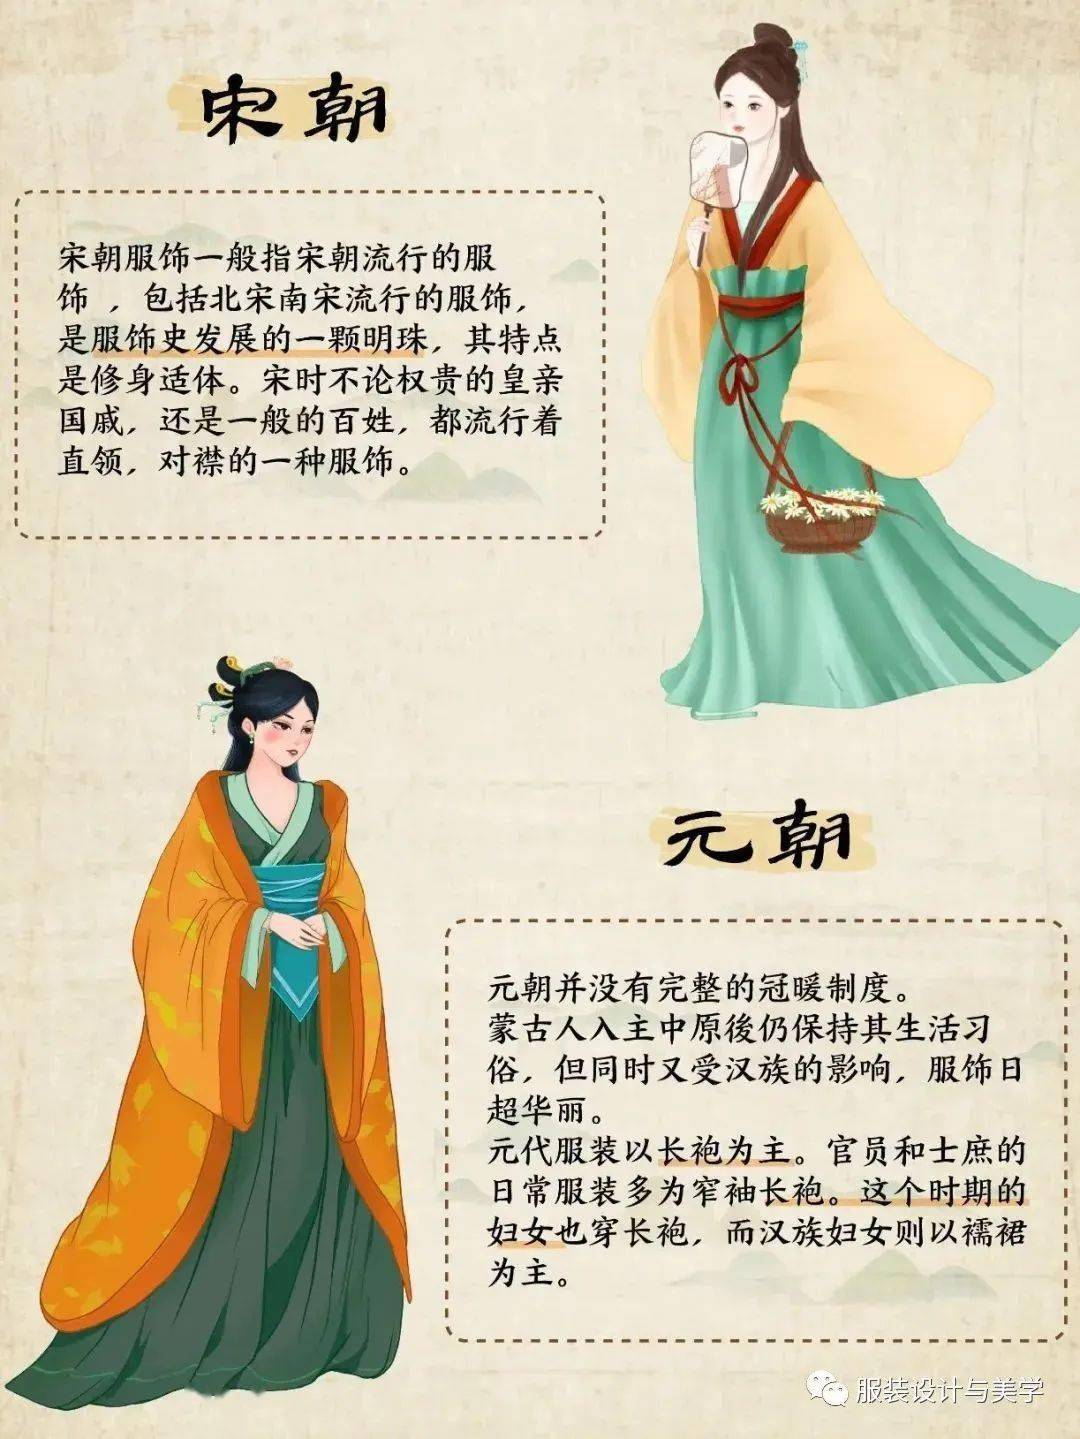 【唐代】是中国历史上一个辉煌而繁荣的时代,也是中国古代服饰发展的